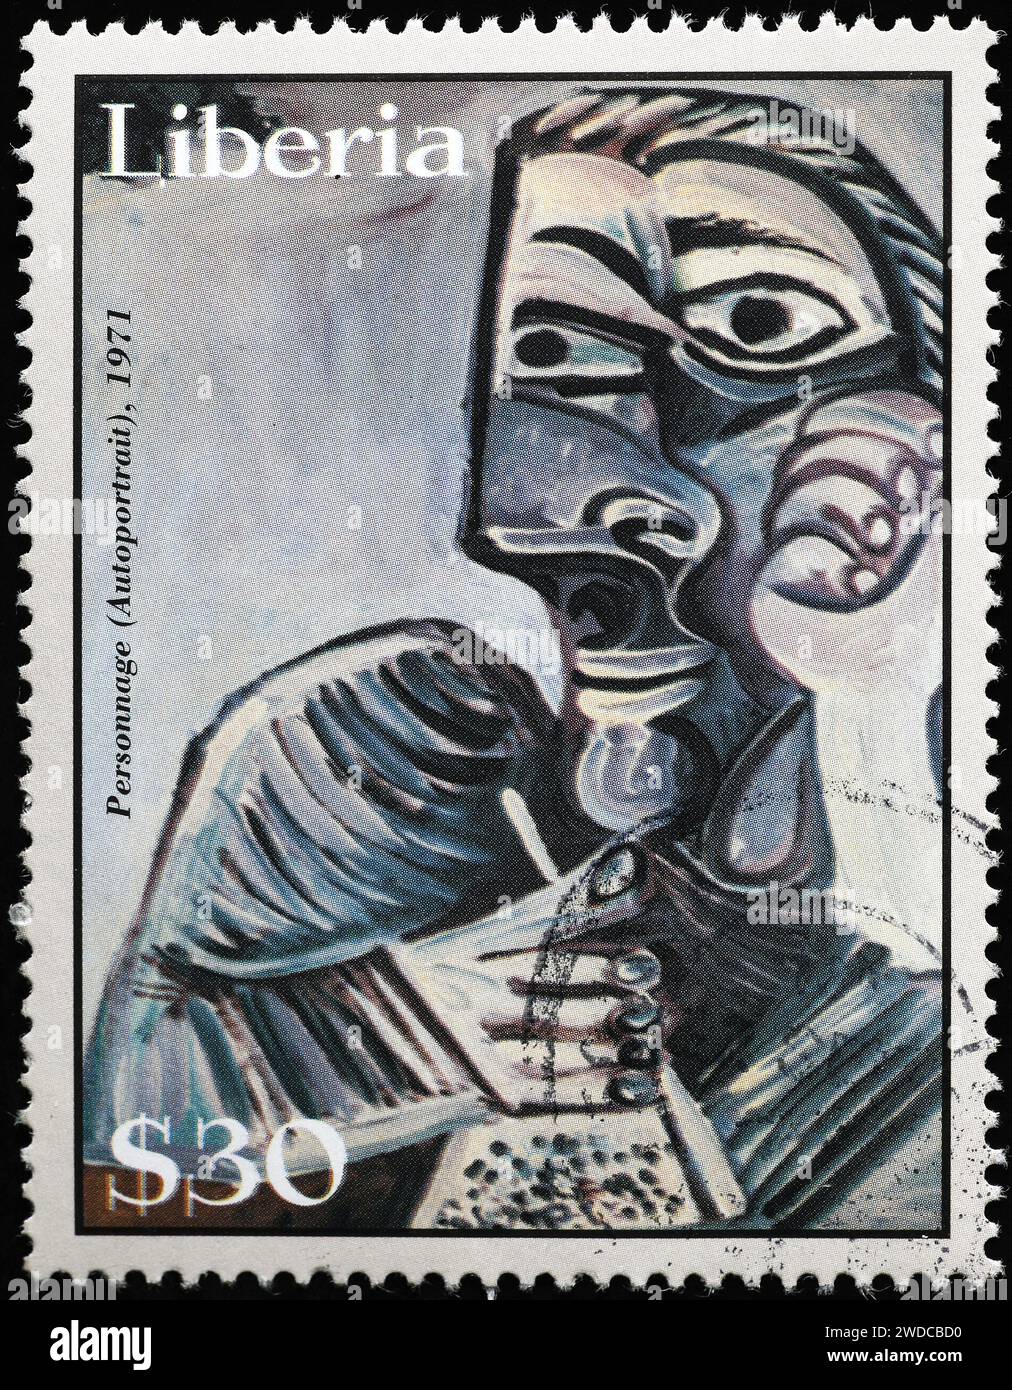 'Personnage' de Pablo Picasso sur timbre-poste Banque D'Images